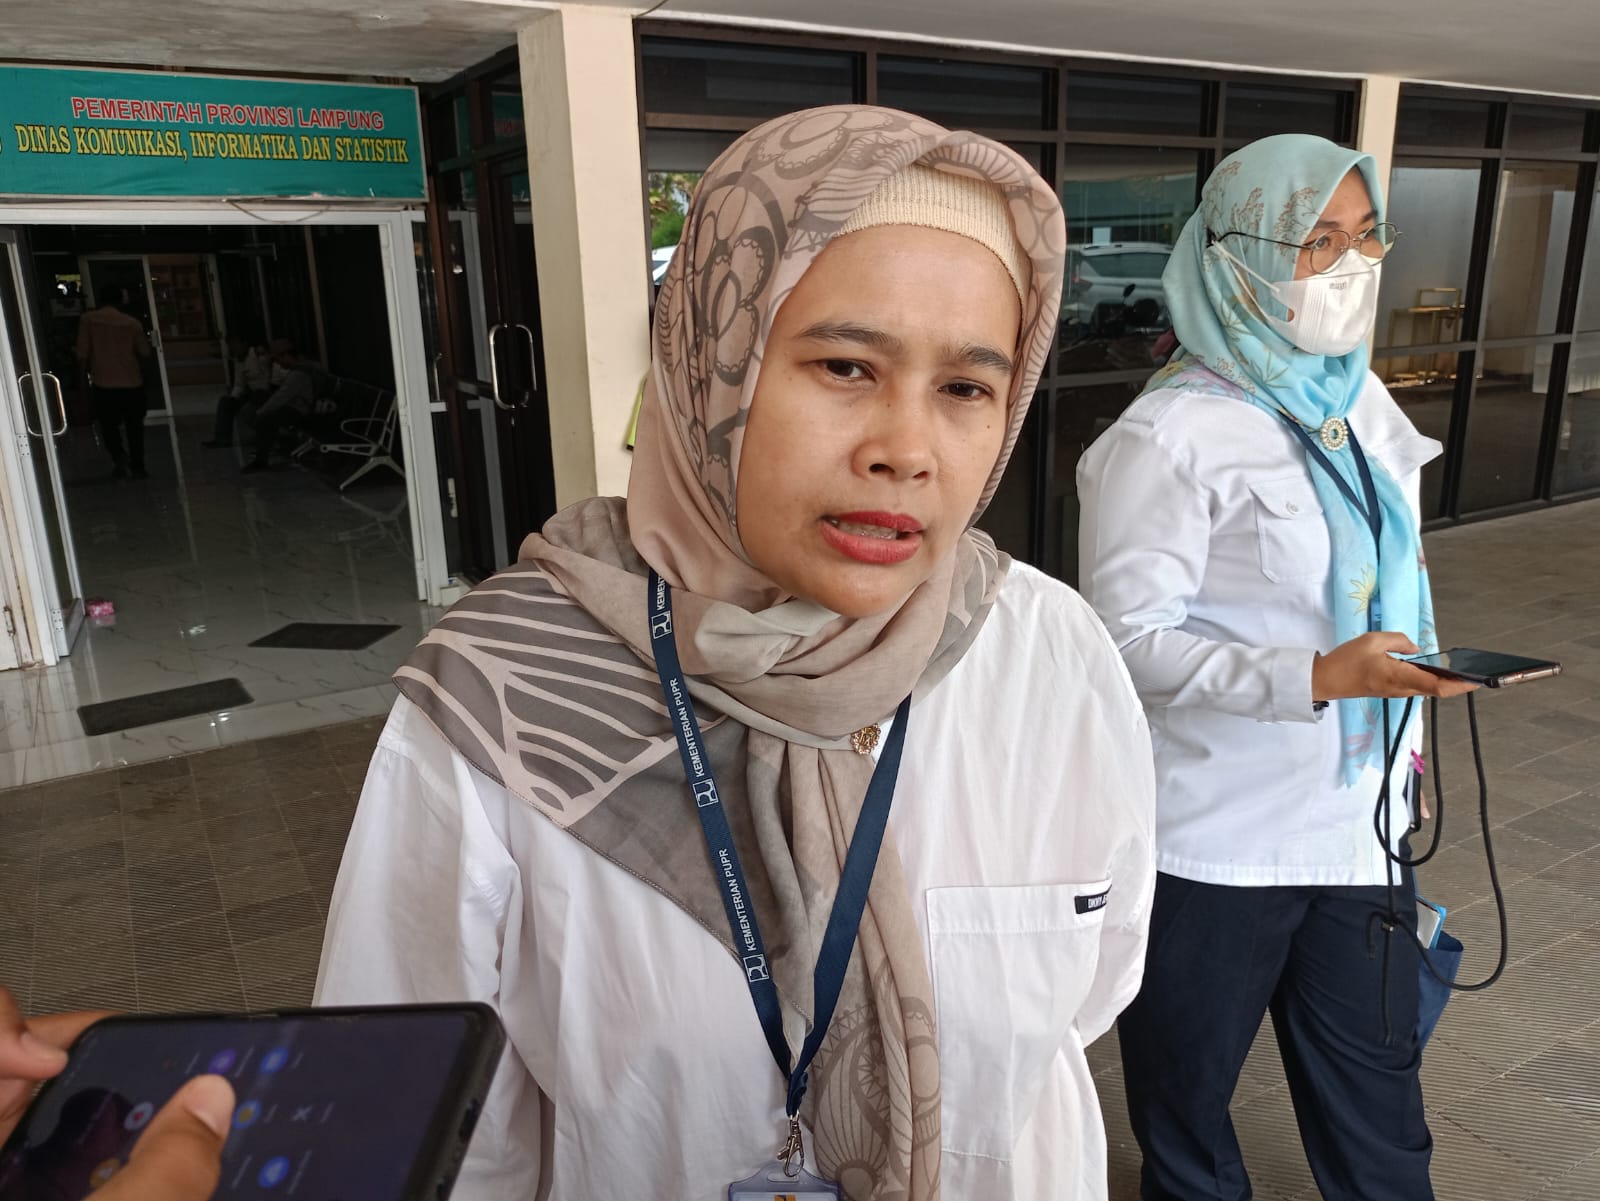 BPJN Lampung Siaga Bencana Alam Hingga Kecelakaan Hadapi Nataru dan Musim Penghujan, Ini Lokasinya